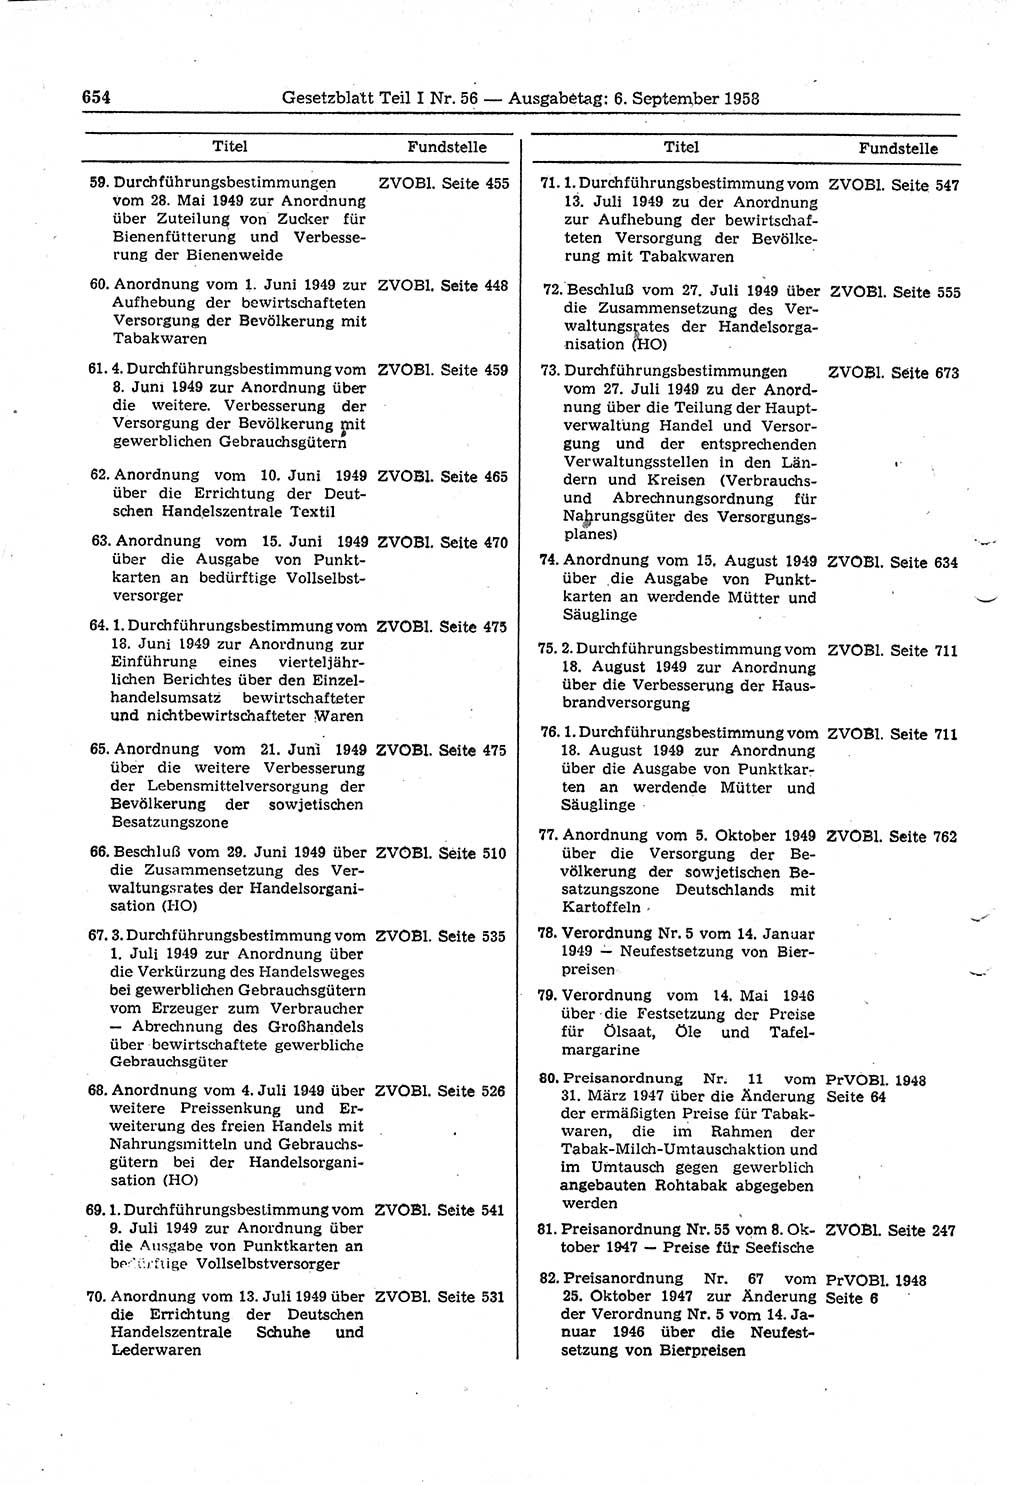 Gesetzblatt (GBl.) der Deutschen Demokratischen Republik (DDR) Teil Ⅰ 1958, Seite 654 (GBl. DDR Ⅰ 1958, S. 654)